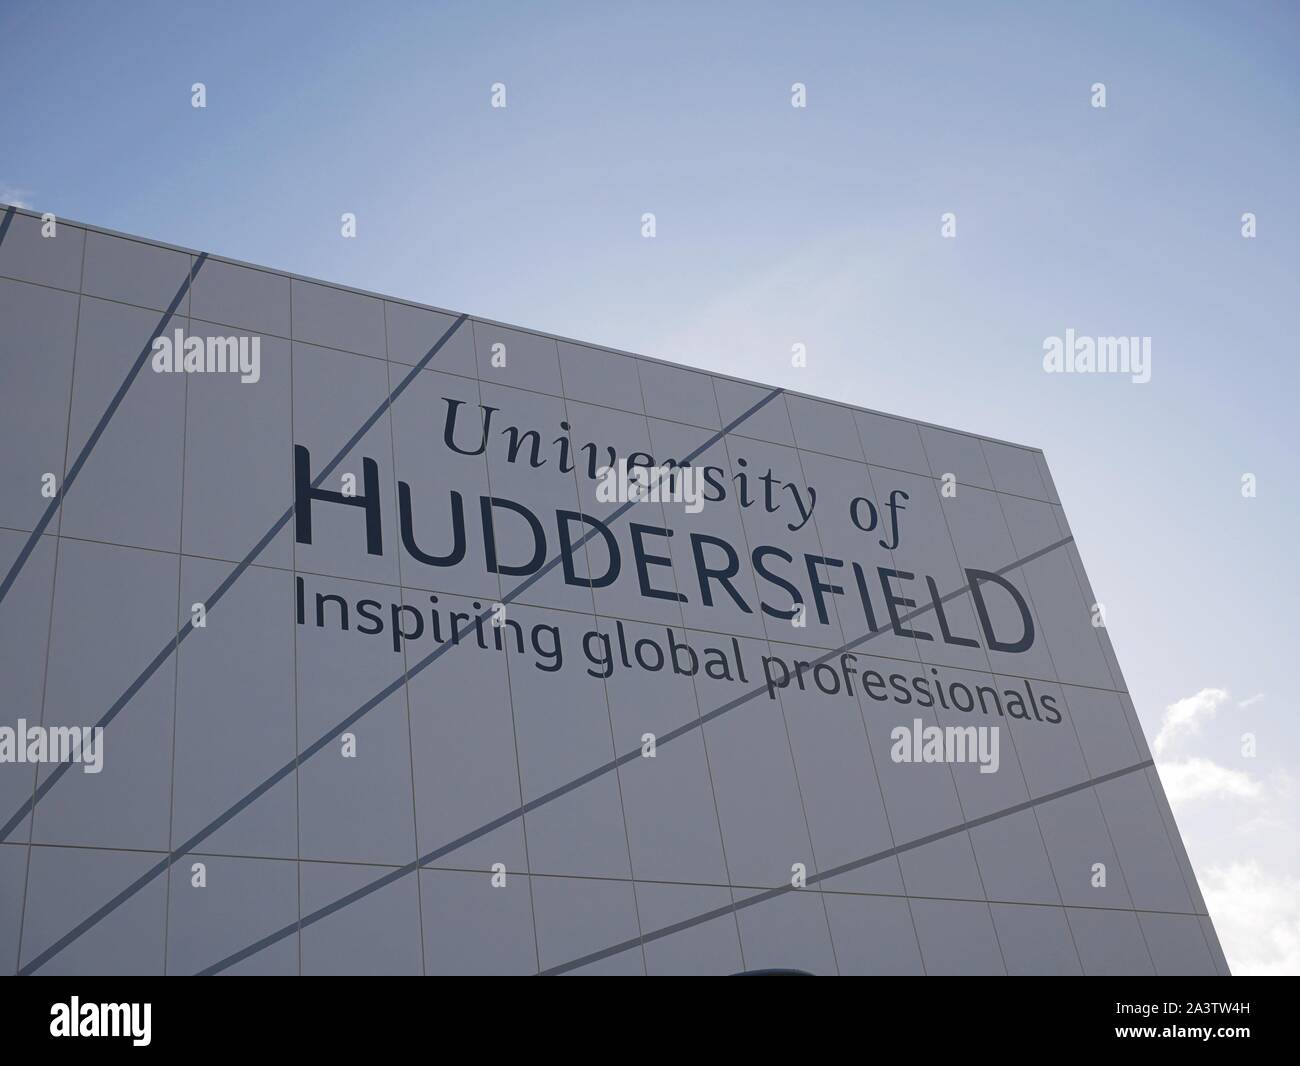 Universität Huddersfield inspirierende Global Professionals auf der Barbara Hepworth building an der Universität Huddersfield Yorkshire England geschrieben Stockfoto